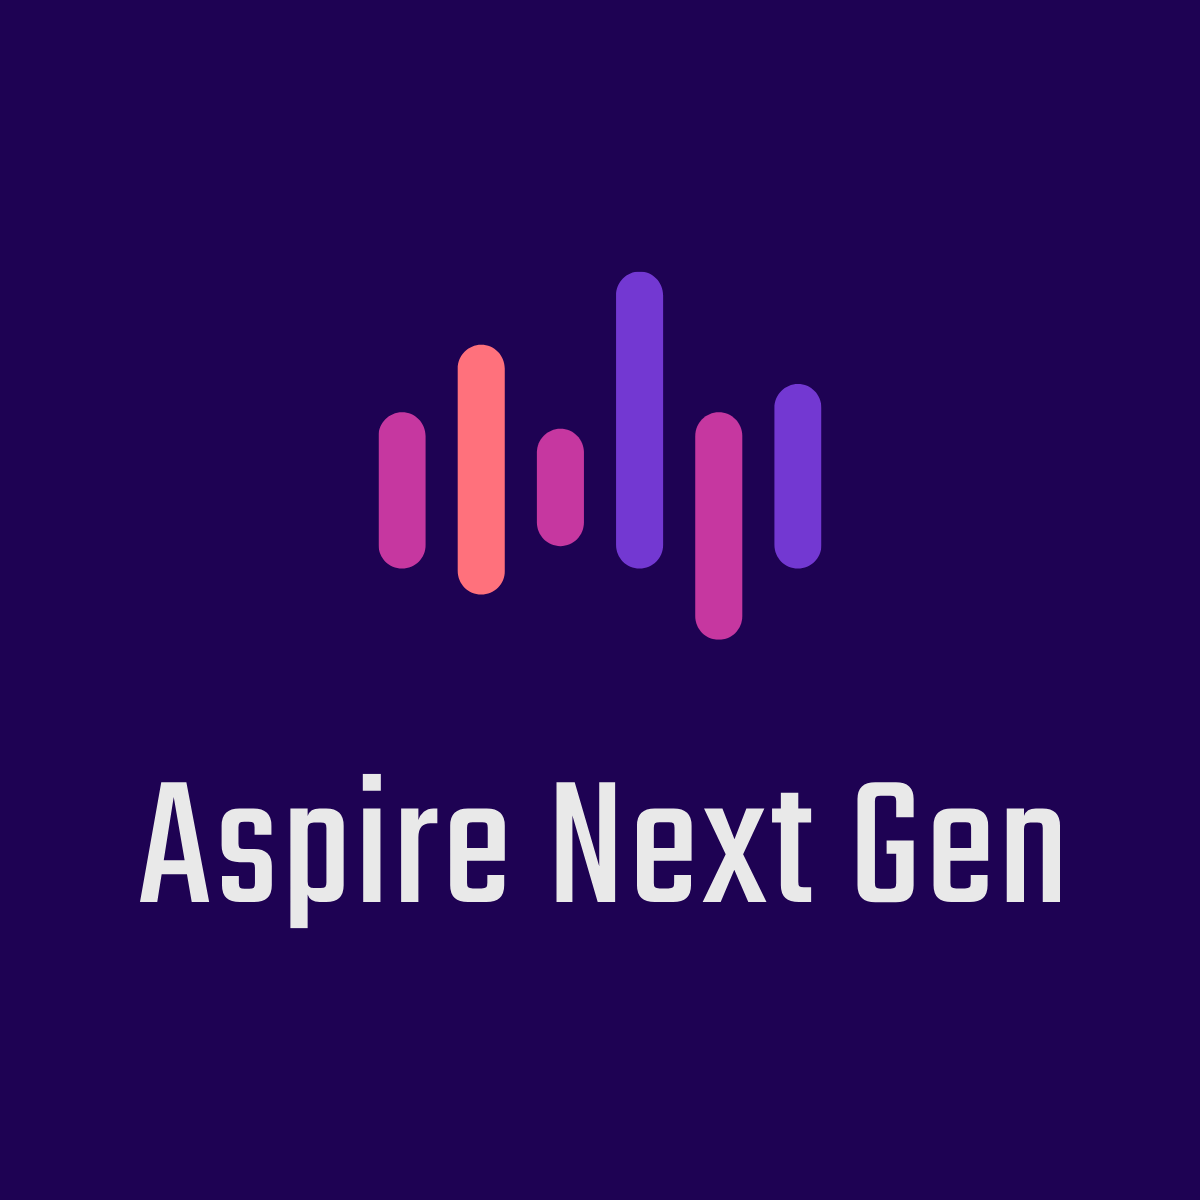 Aspire Next Gen logo